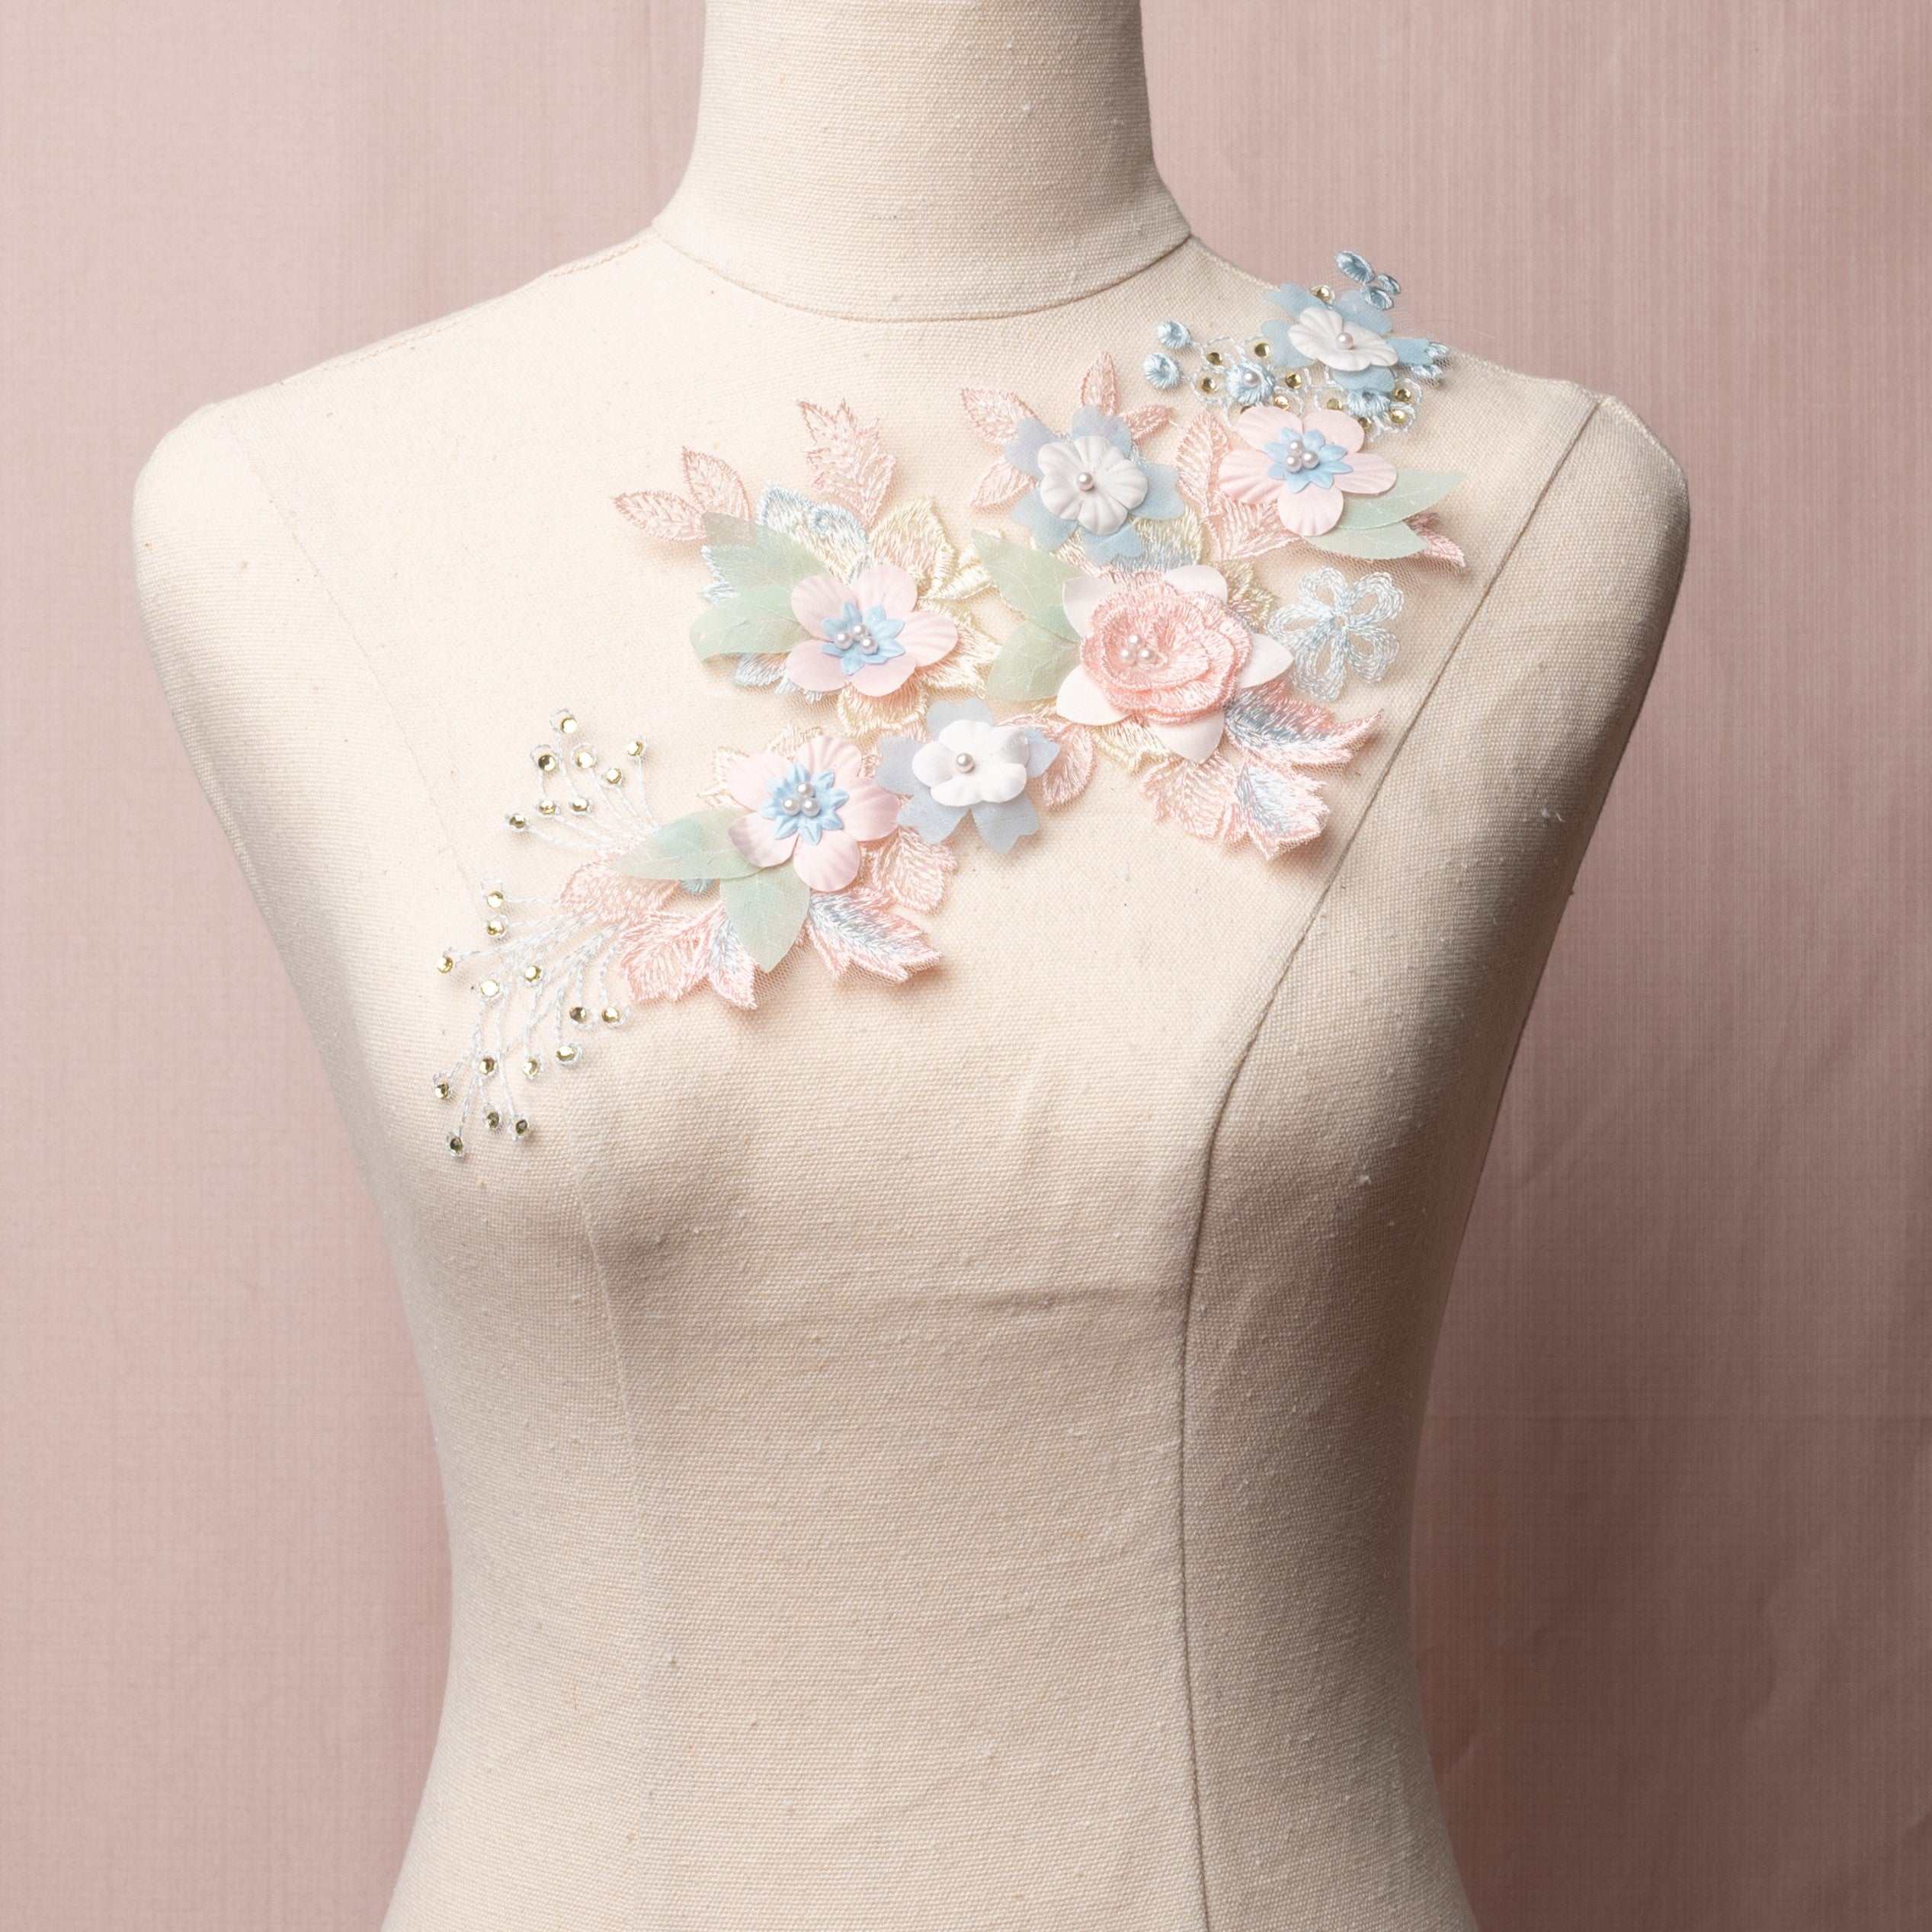 Single Pastel 3D Floral Applique - Flower Fairy, Dance